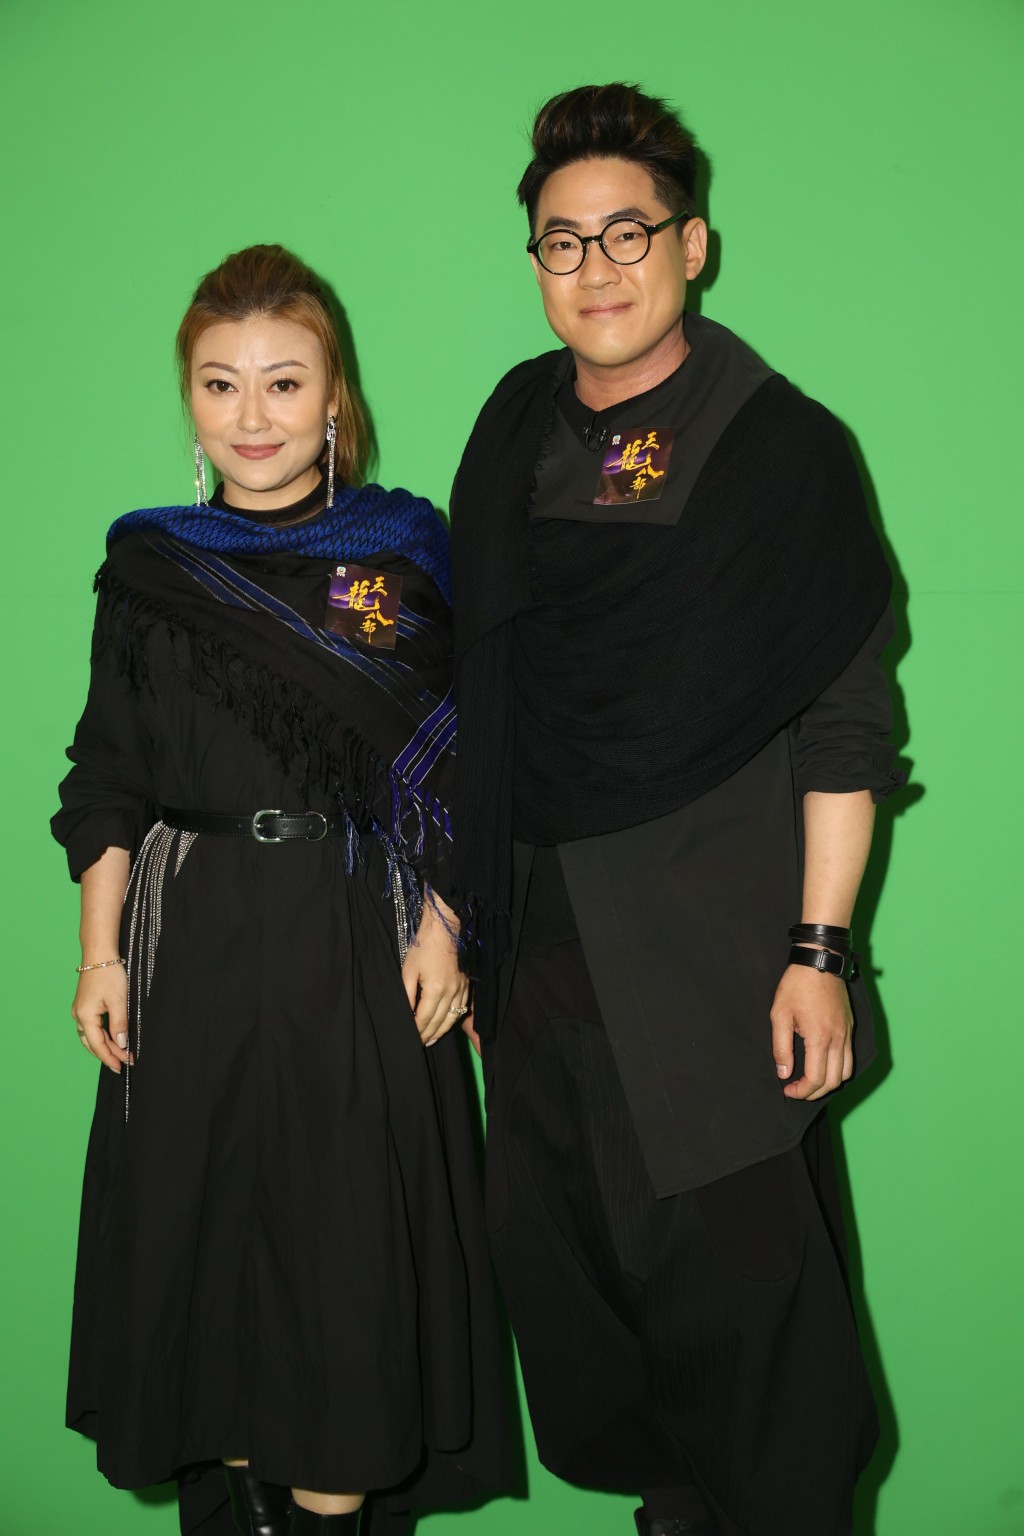 李佳与罗启豪为剧集《天龙八部》片尾曲《俩忘烟水里》拍摄MV。